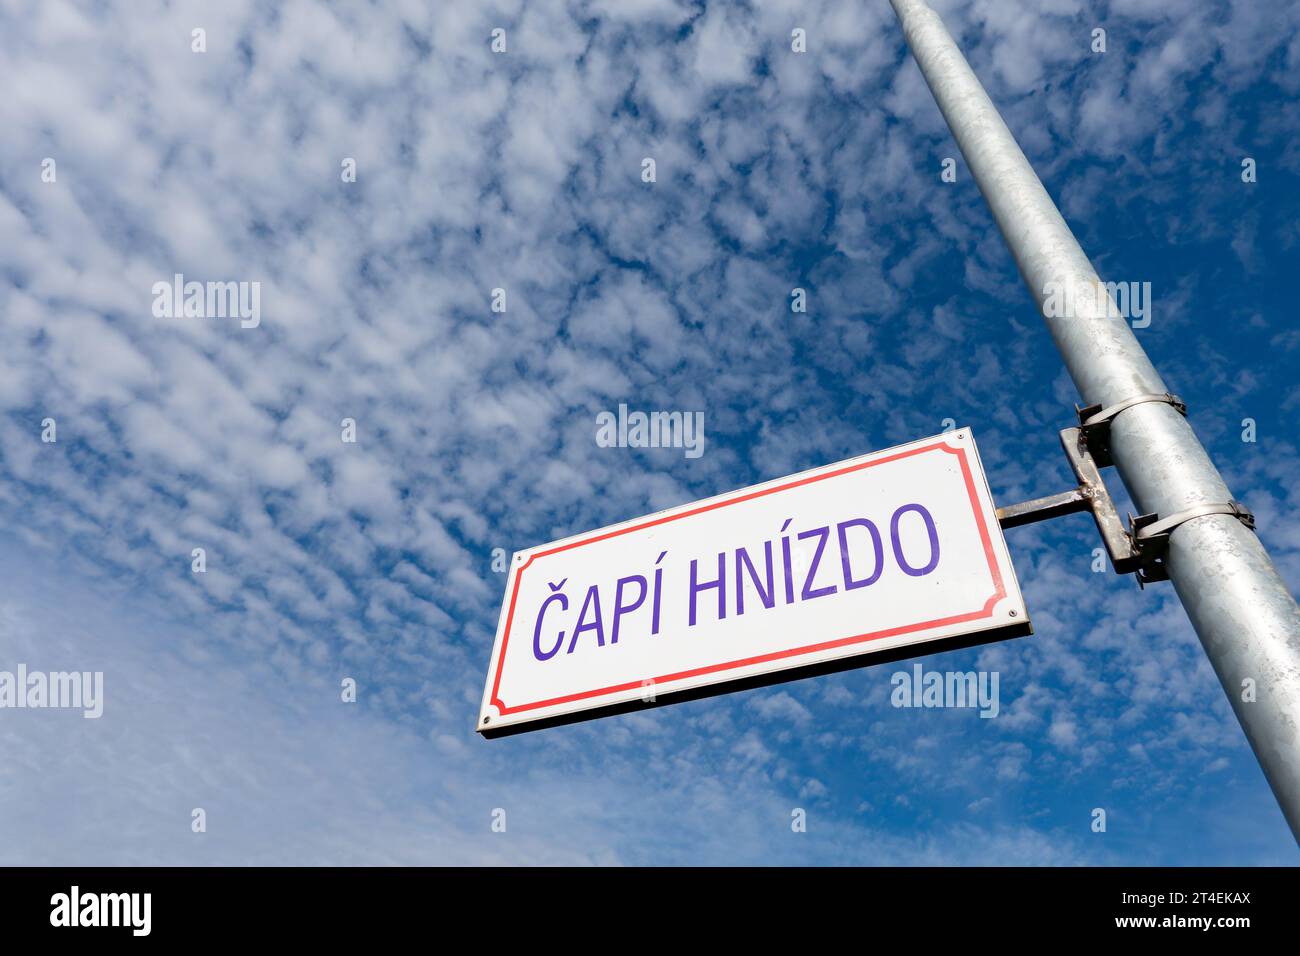 HAVIROV, REPUBBLICA CECA - 12 OTTOBRE 2013: Il nome della via Capi Hnizdo (nido di cicogne in ceco) ricorda l'enorme scandalo delle sovvenzioni di Andrej Babis prime Foto Stock